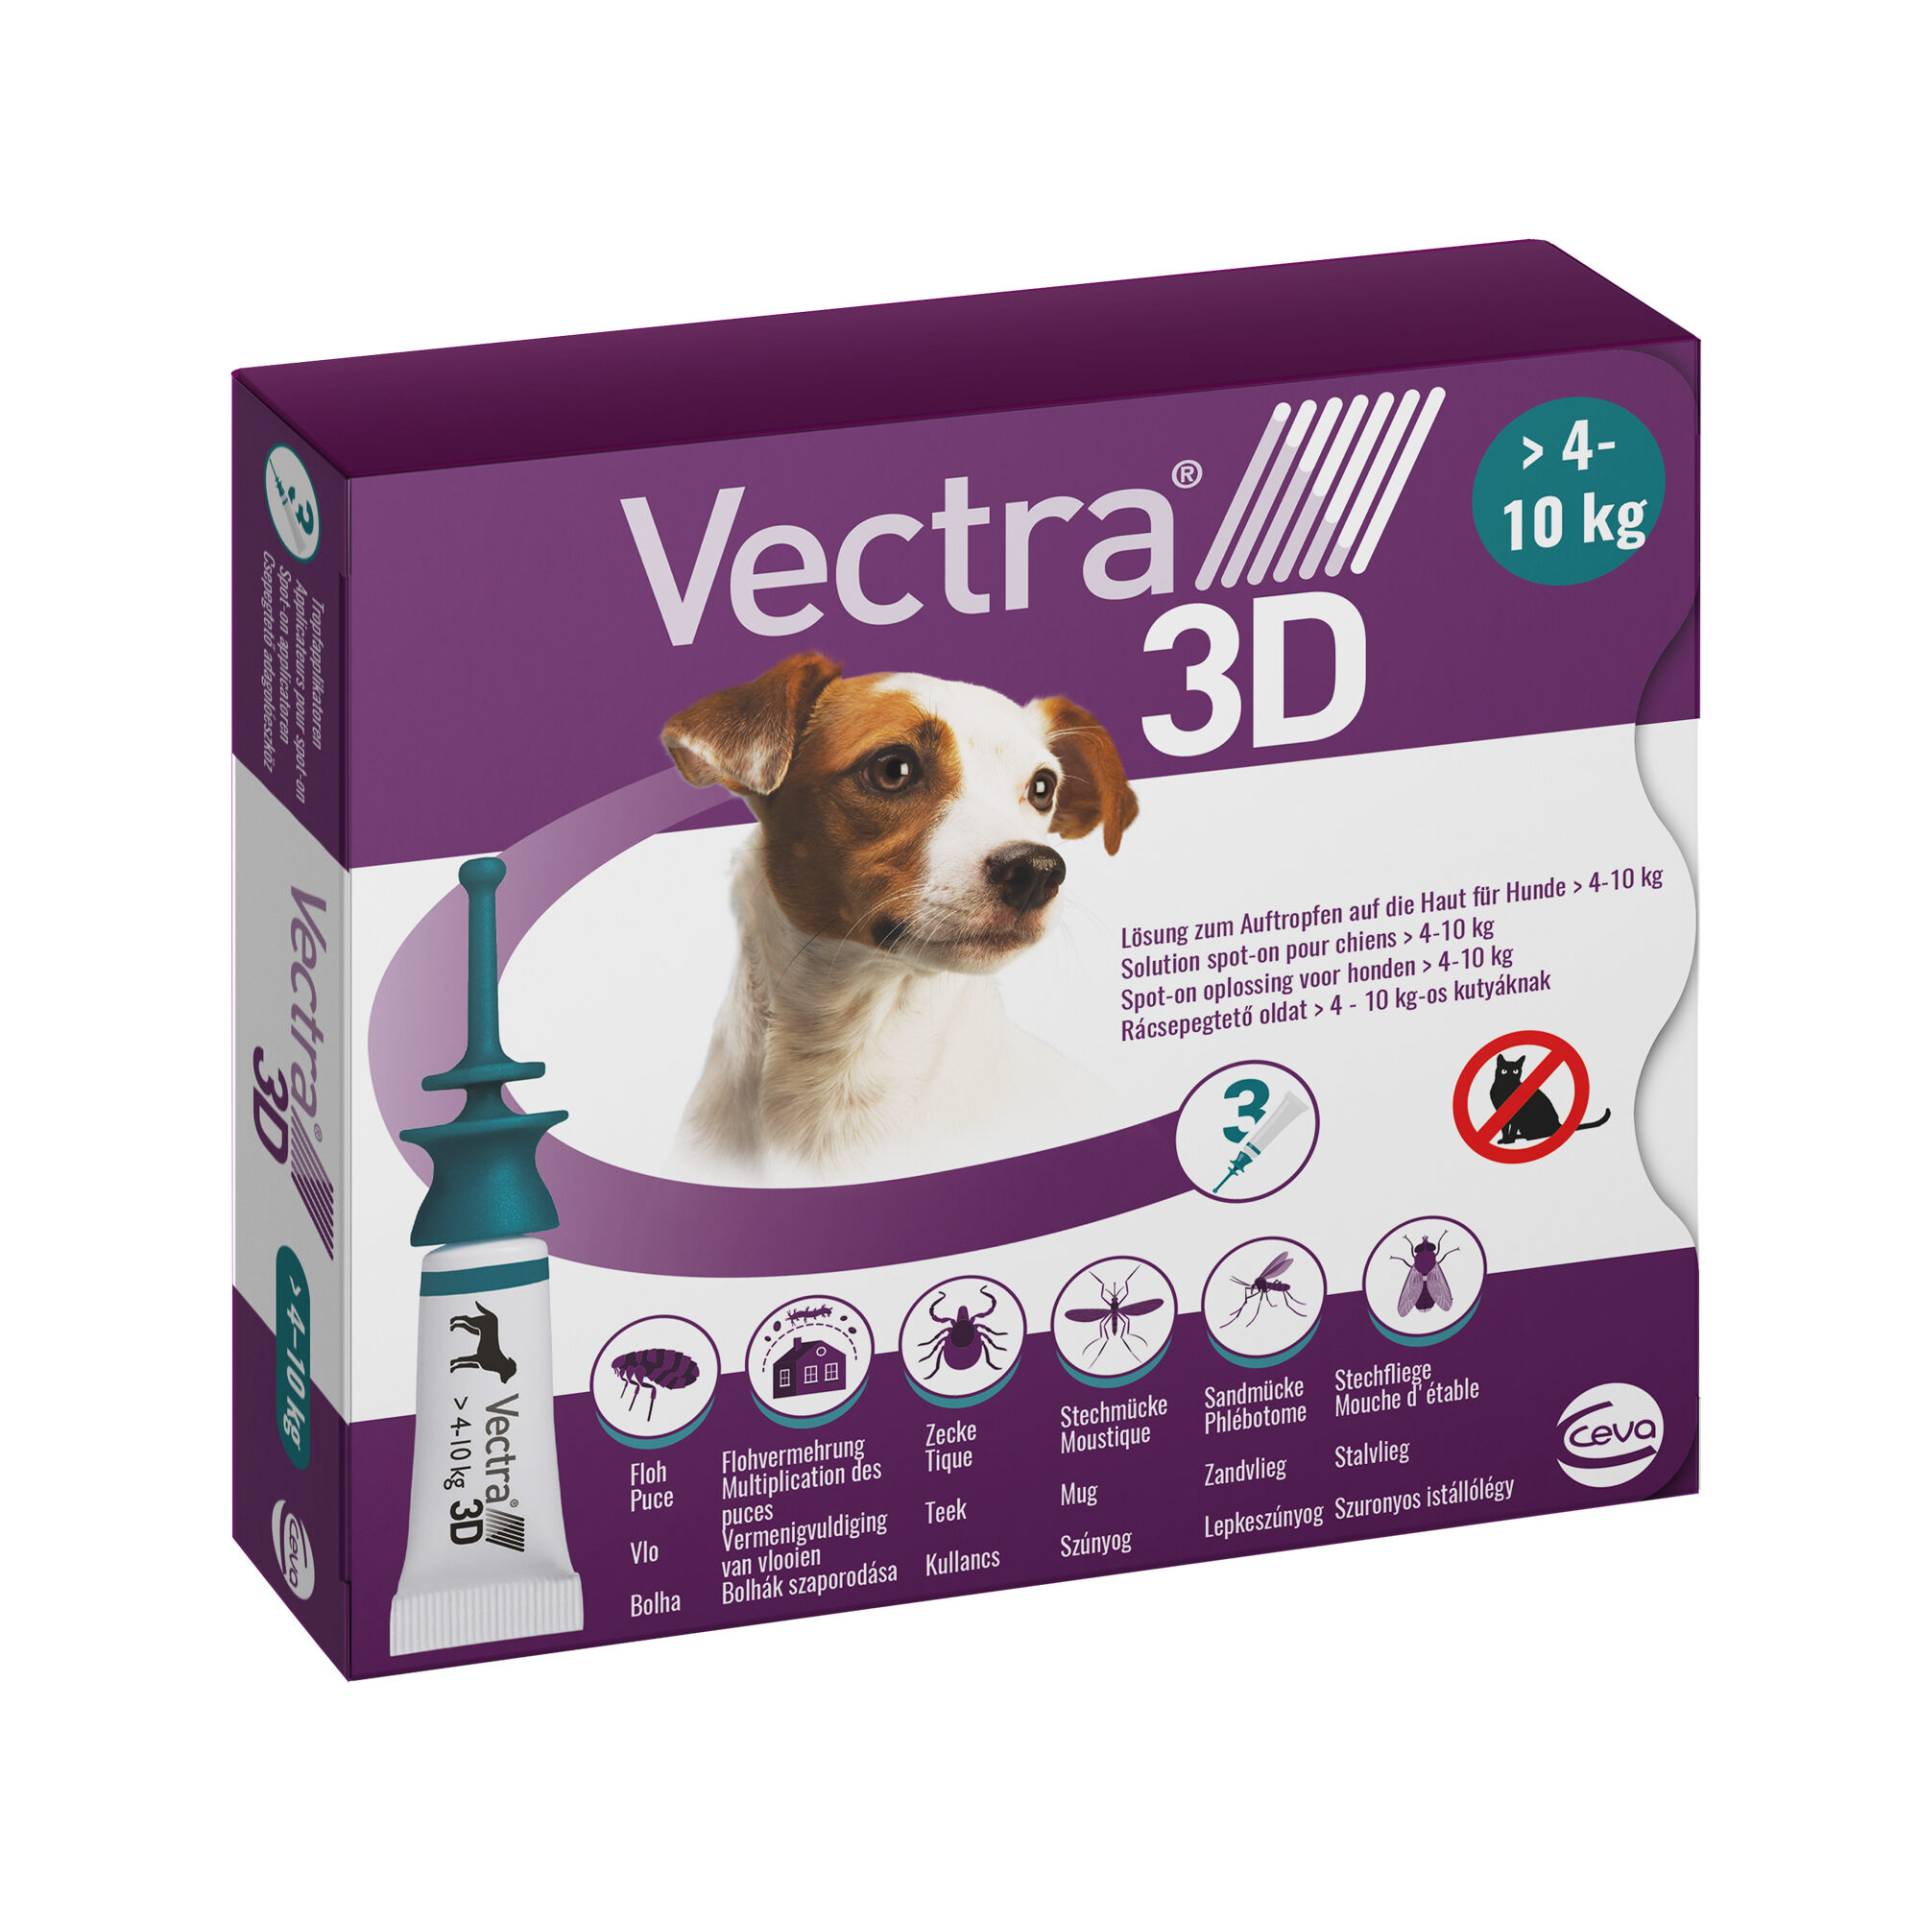 Vectra 3D Dog S - 4 bis 10 kg - 3 Pipetten von Vectra